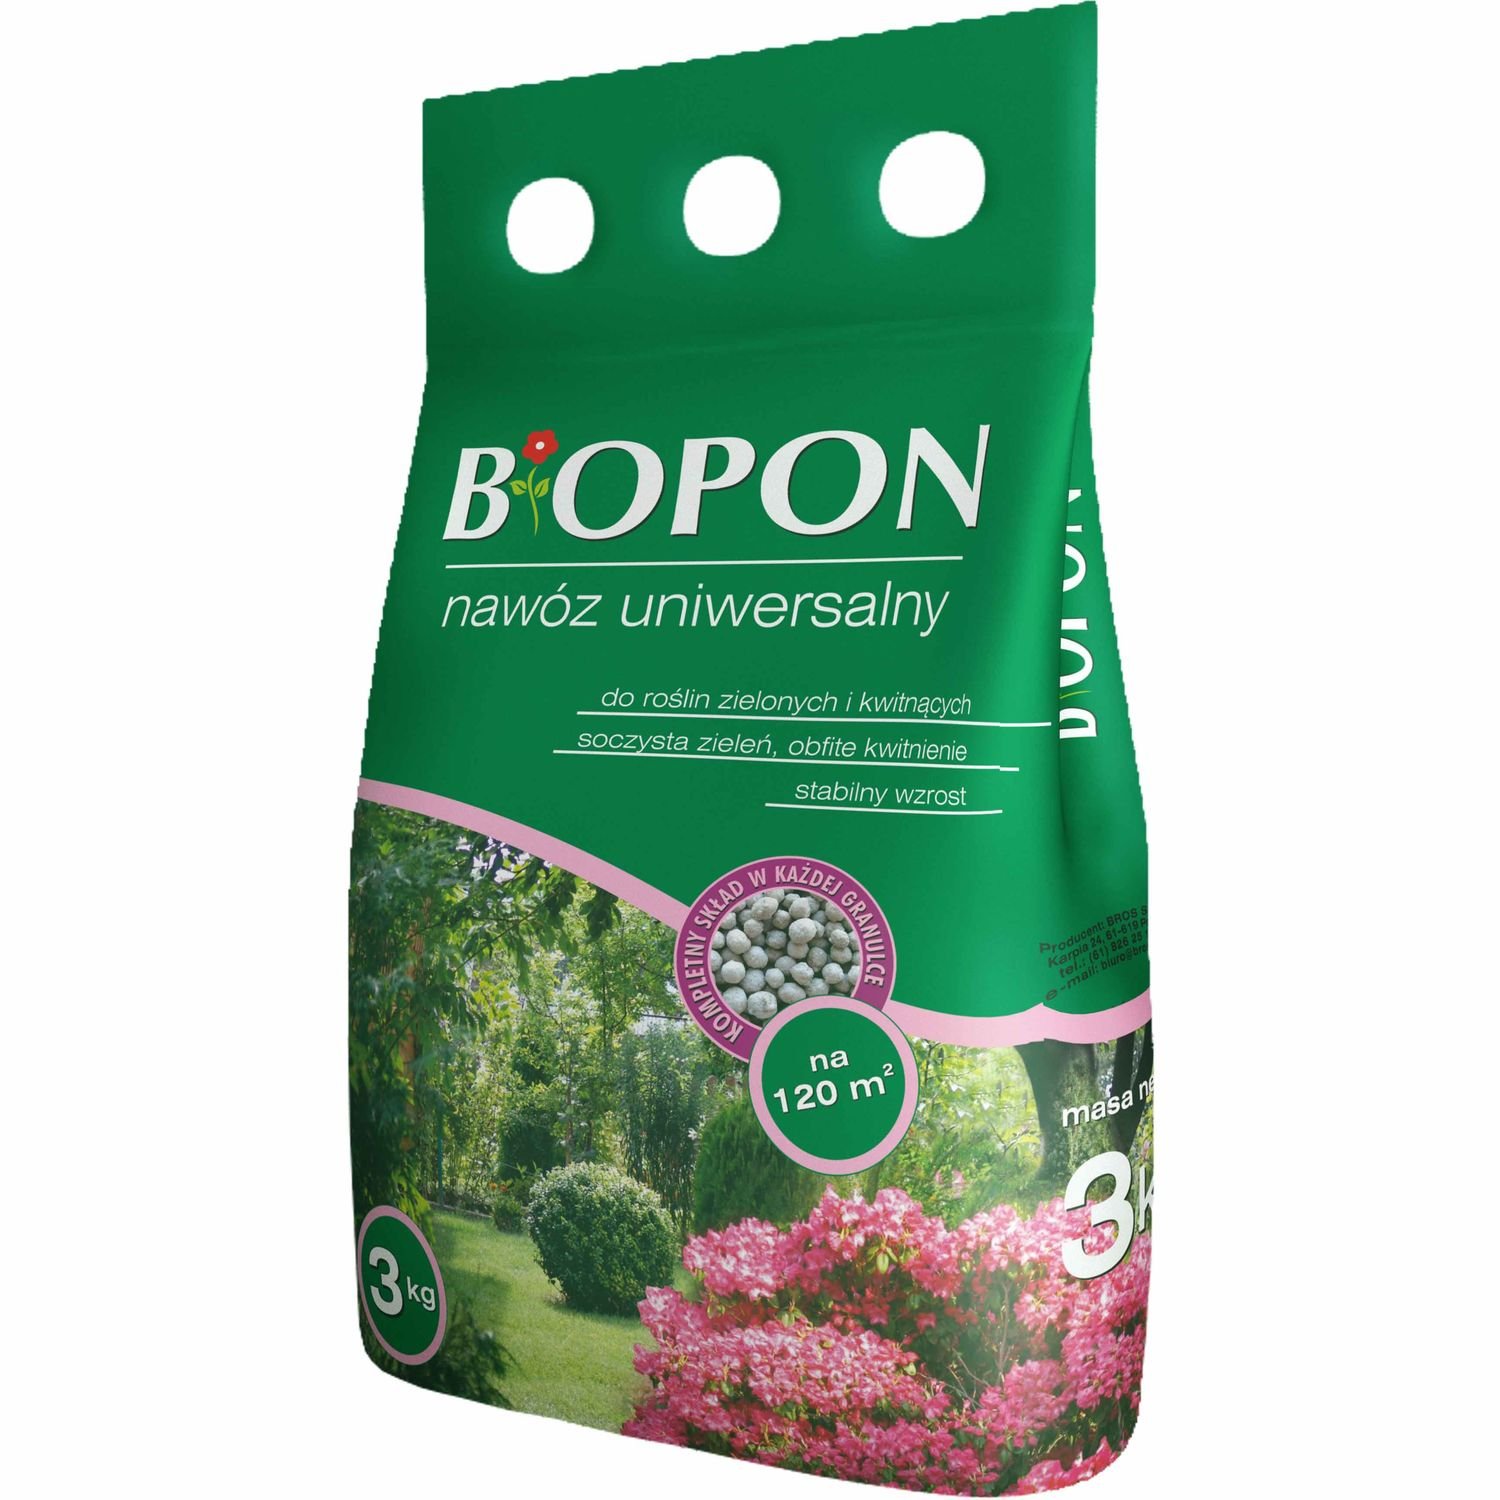 Удобрение гранулированное Biopon универсальное, 3 кг - фото 1